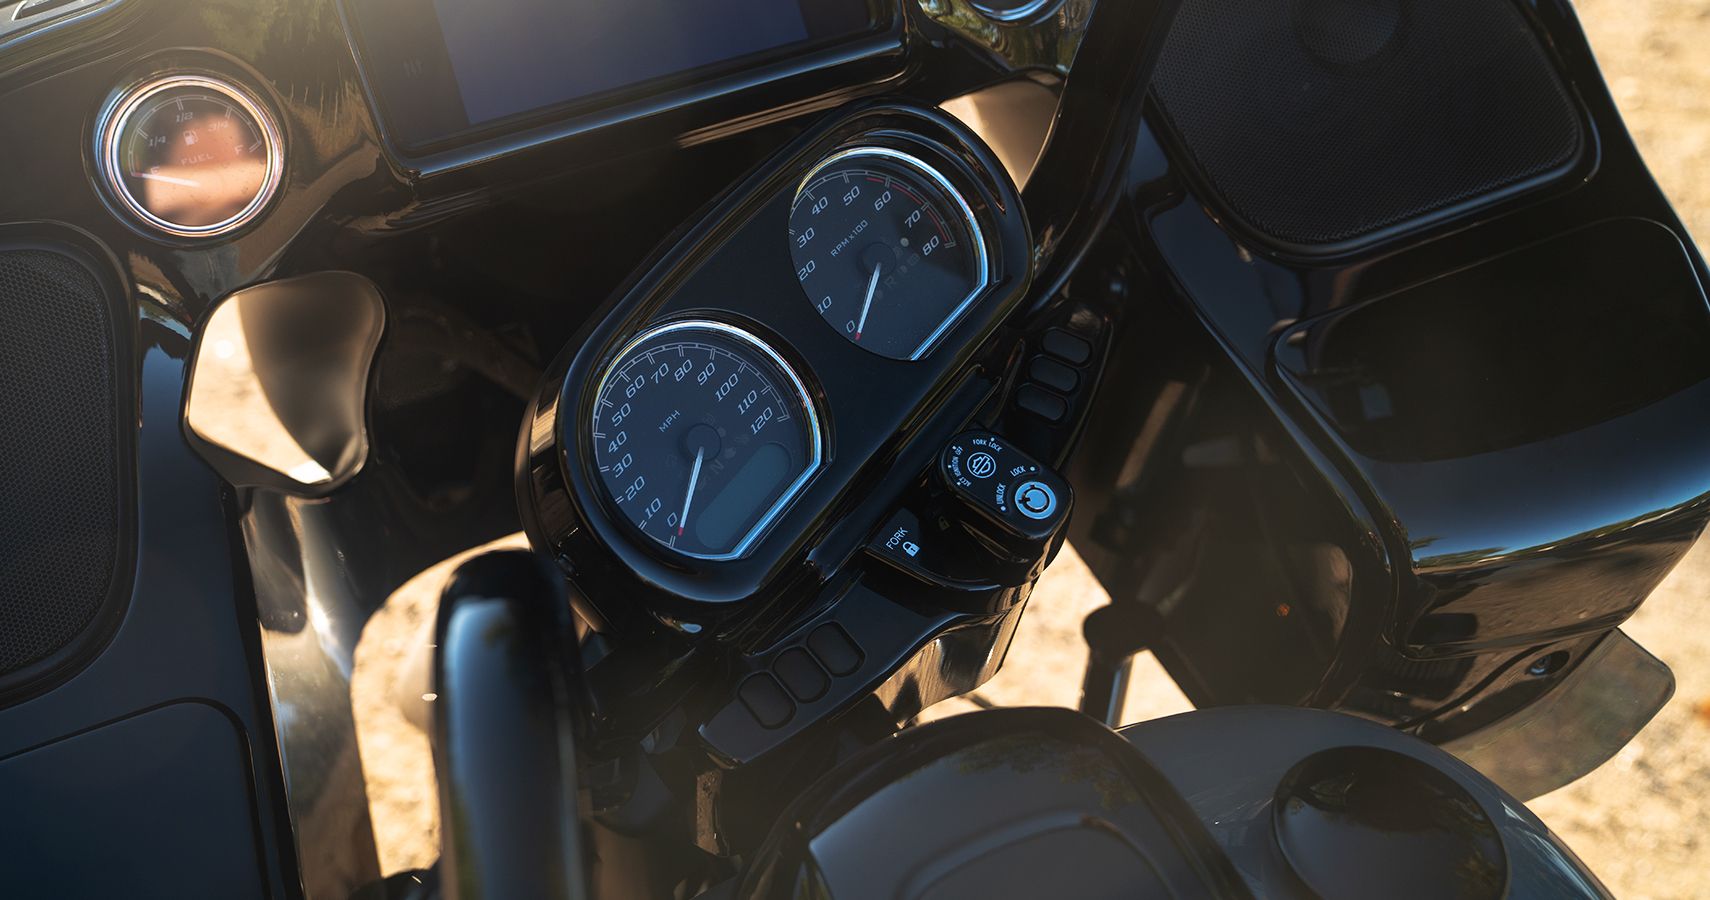 2022 Harley-Davidson Road Glide ST gauges